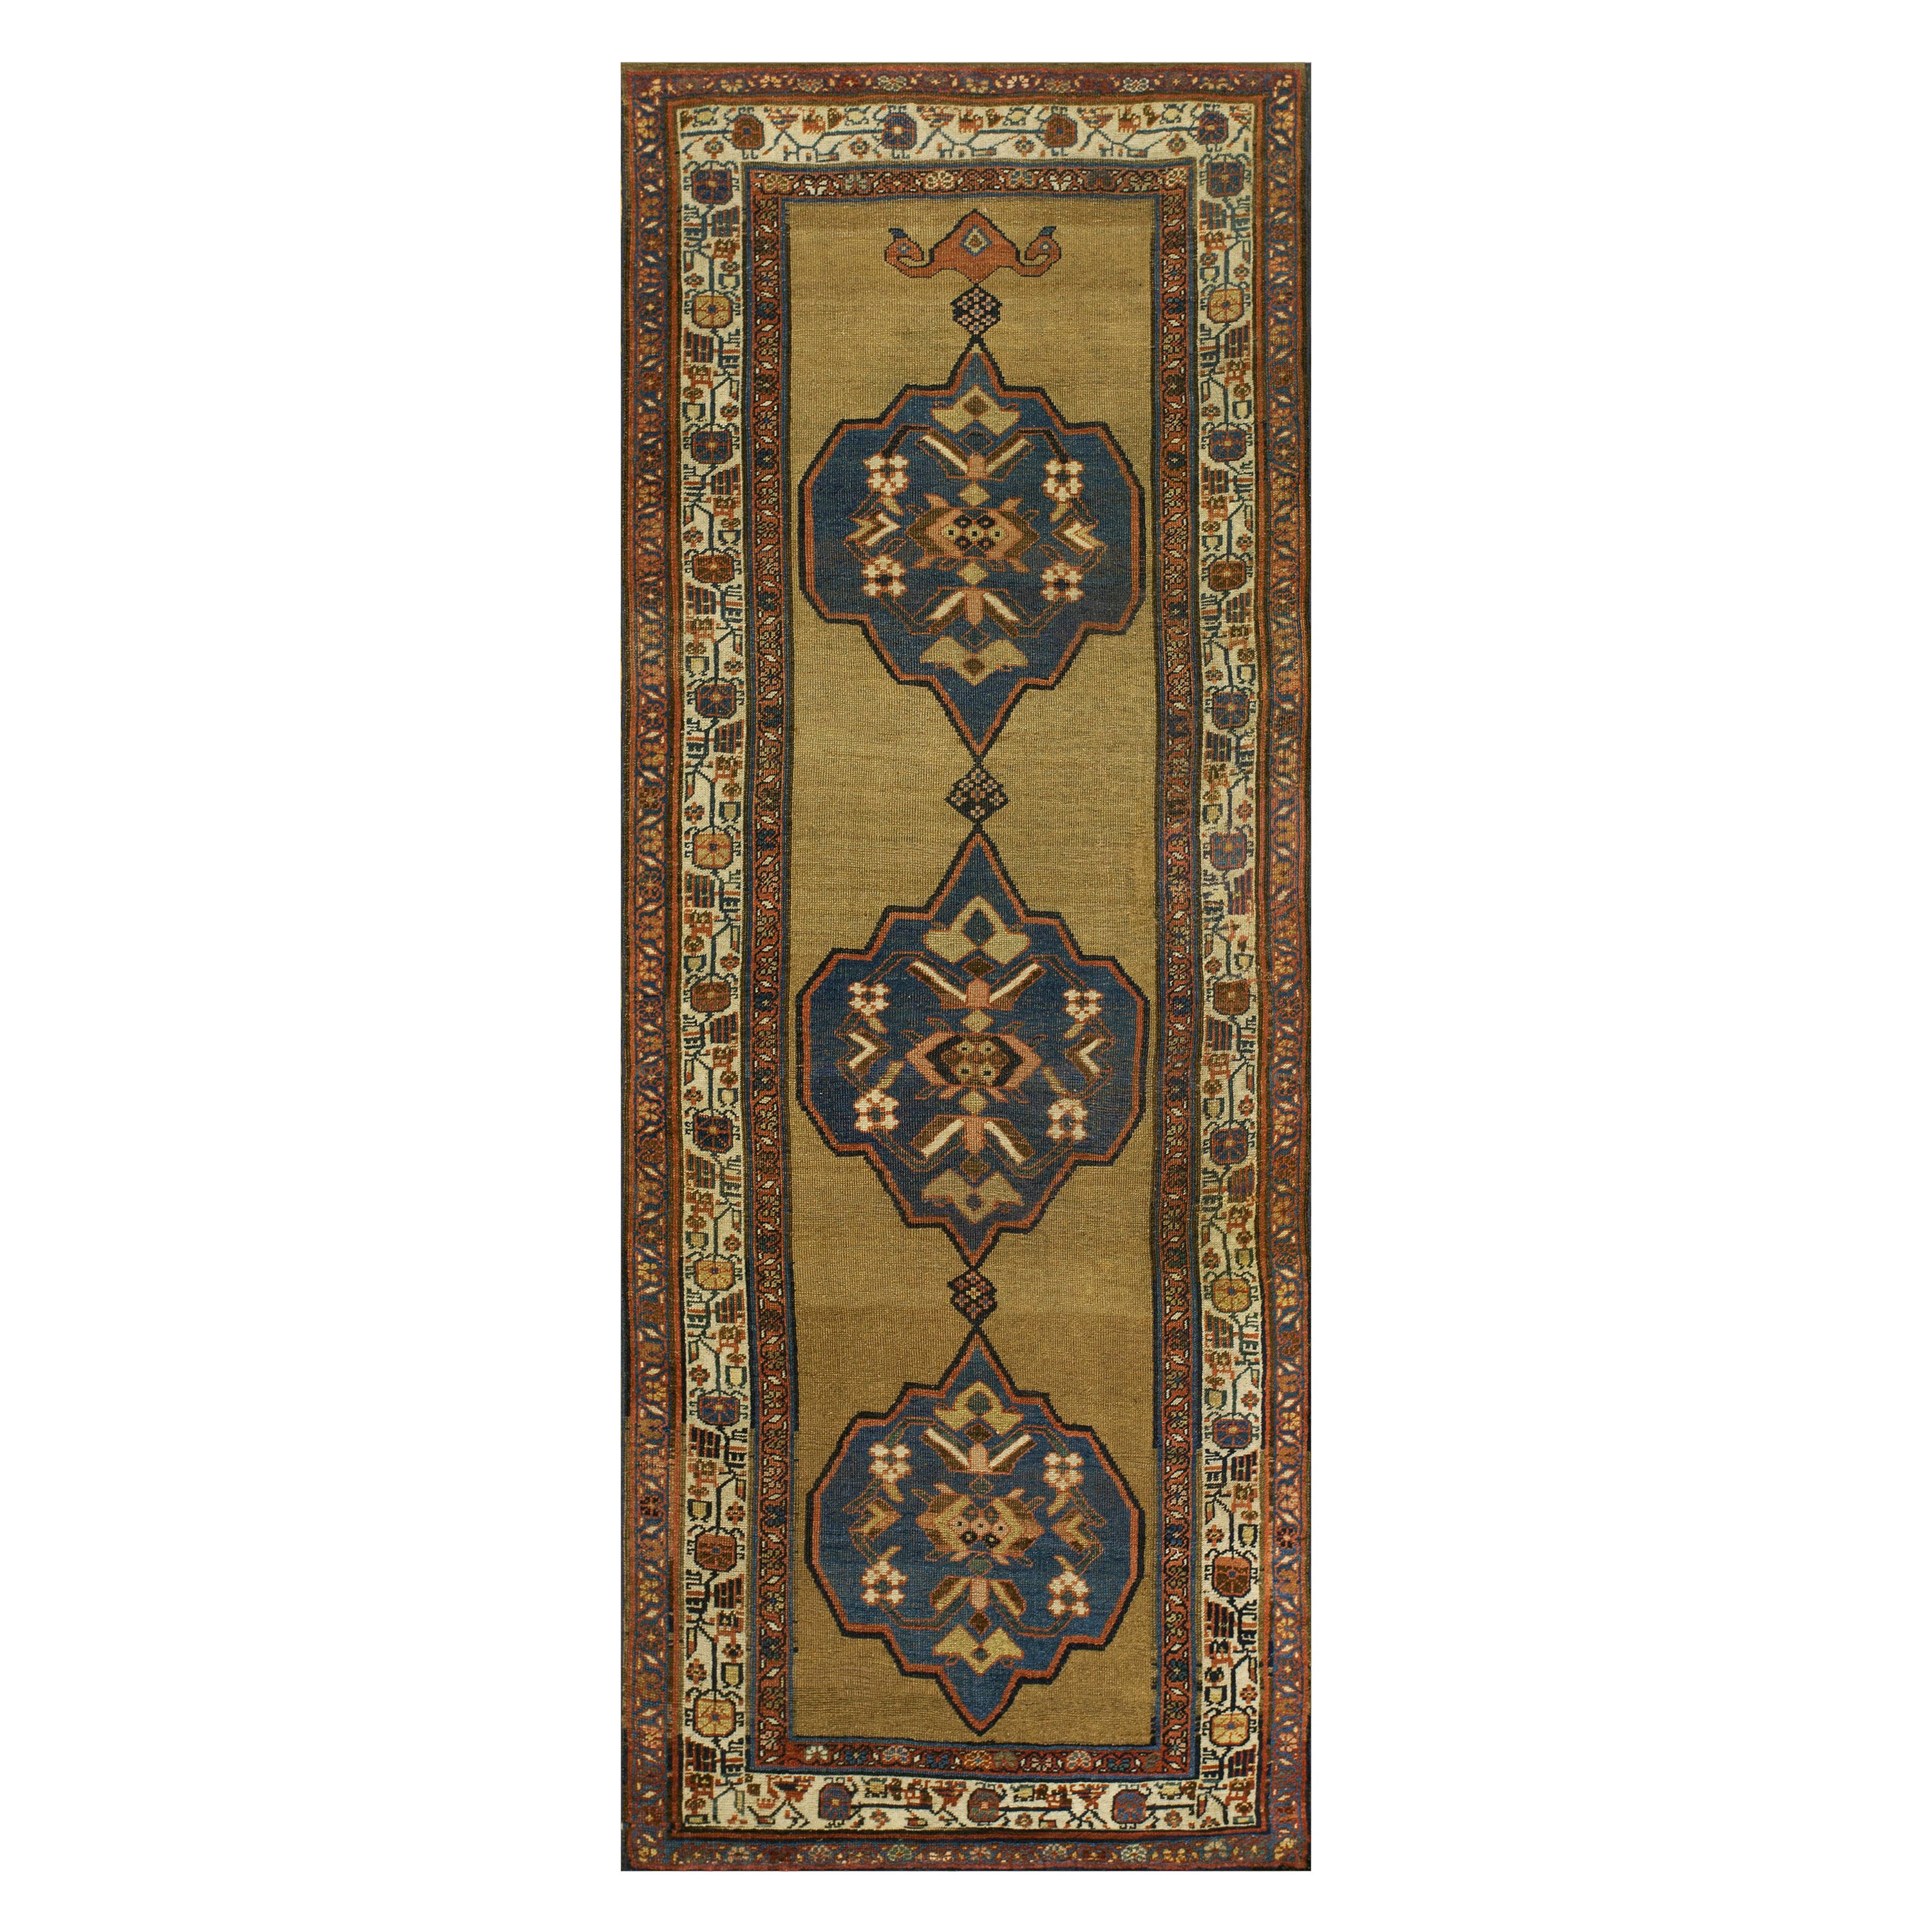 Persischer Bijar-Teppich des späten 19. Jahrhunderts ( 4' x 10' 4""" - 122 x 315 cm)